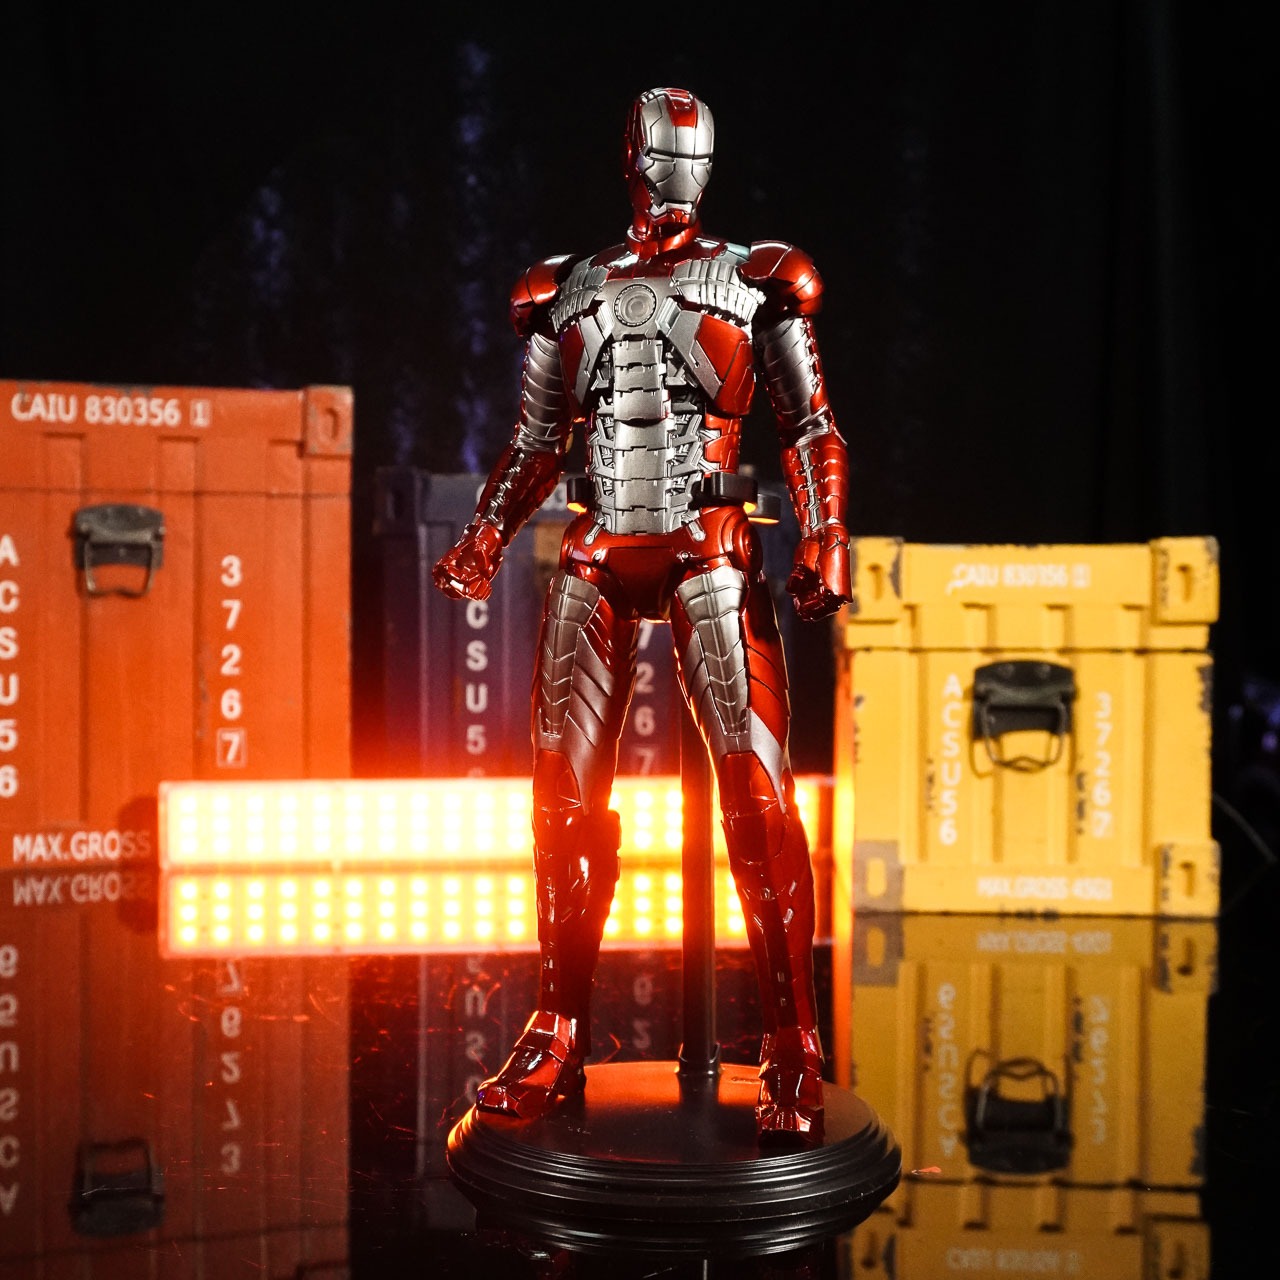 Action Figure Estátua Homem de Ferro Iron Man Tony Stark MK Mark 5: Homem de Ferro 2 Iron Man 2 Marvel Escala 1/6 Empire Toys Estilo Hot Toys - MKP